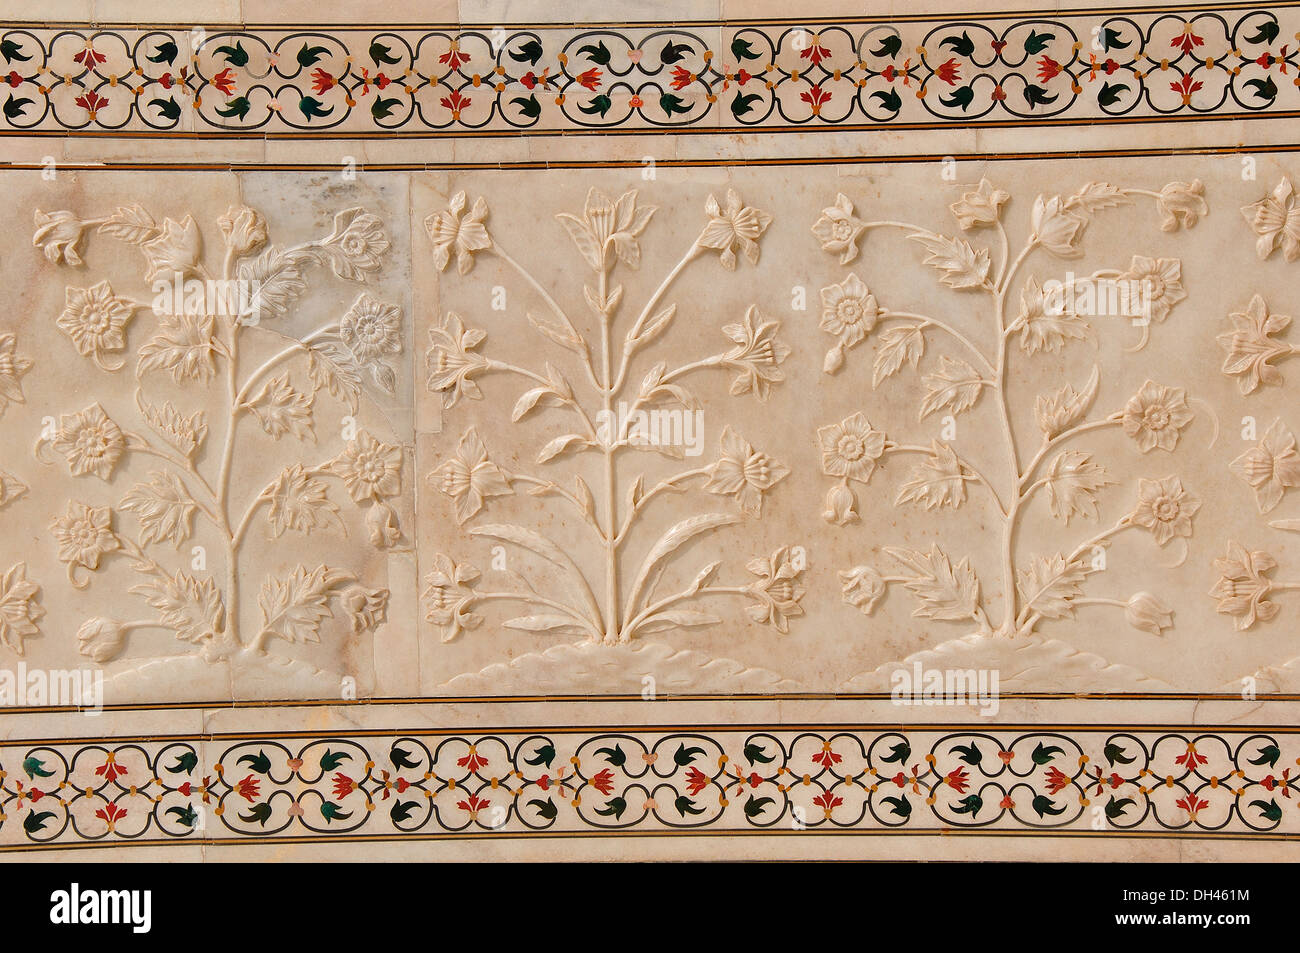 Dans le mur de marbre sculpture relief Taj Mahal Agra Uttar Pradesh Inde Asie Banque D'Images